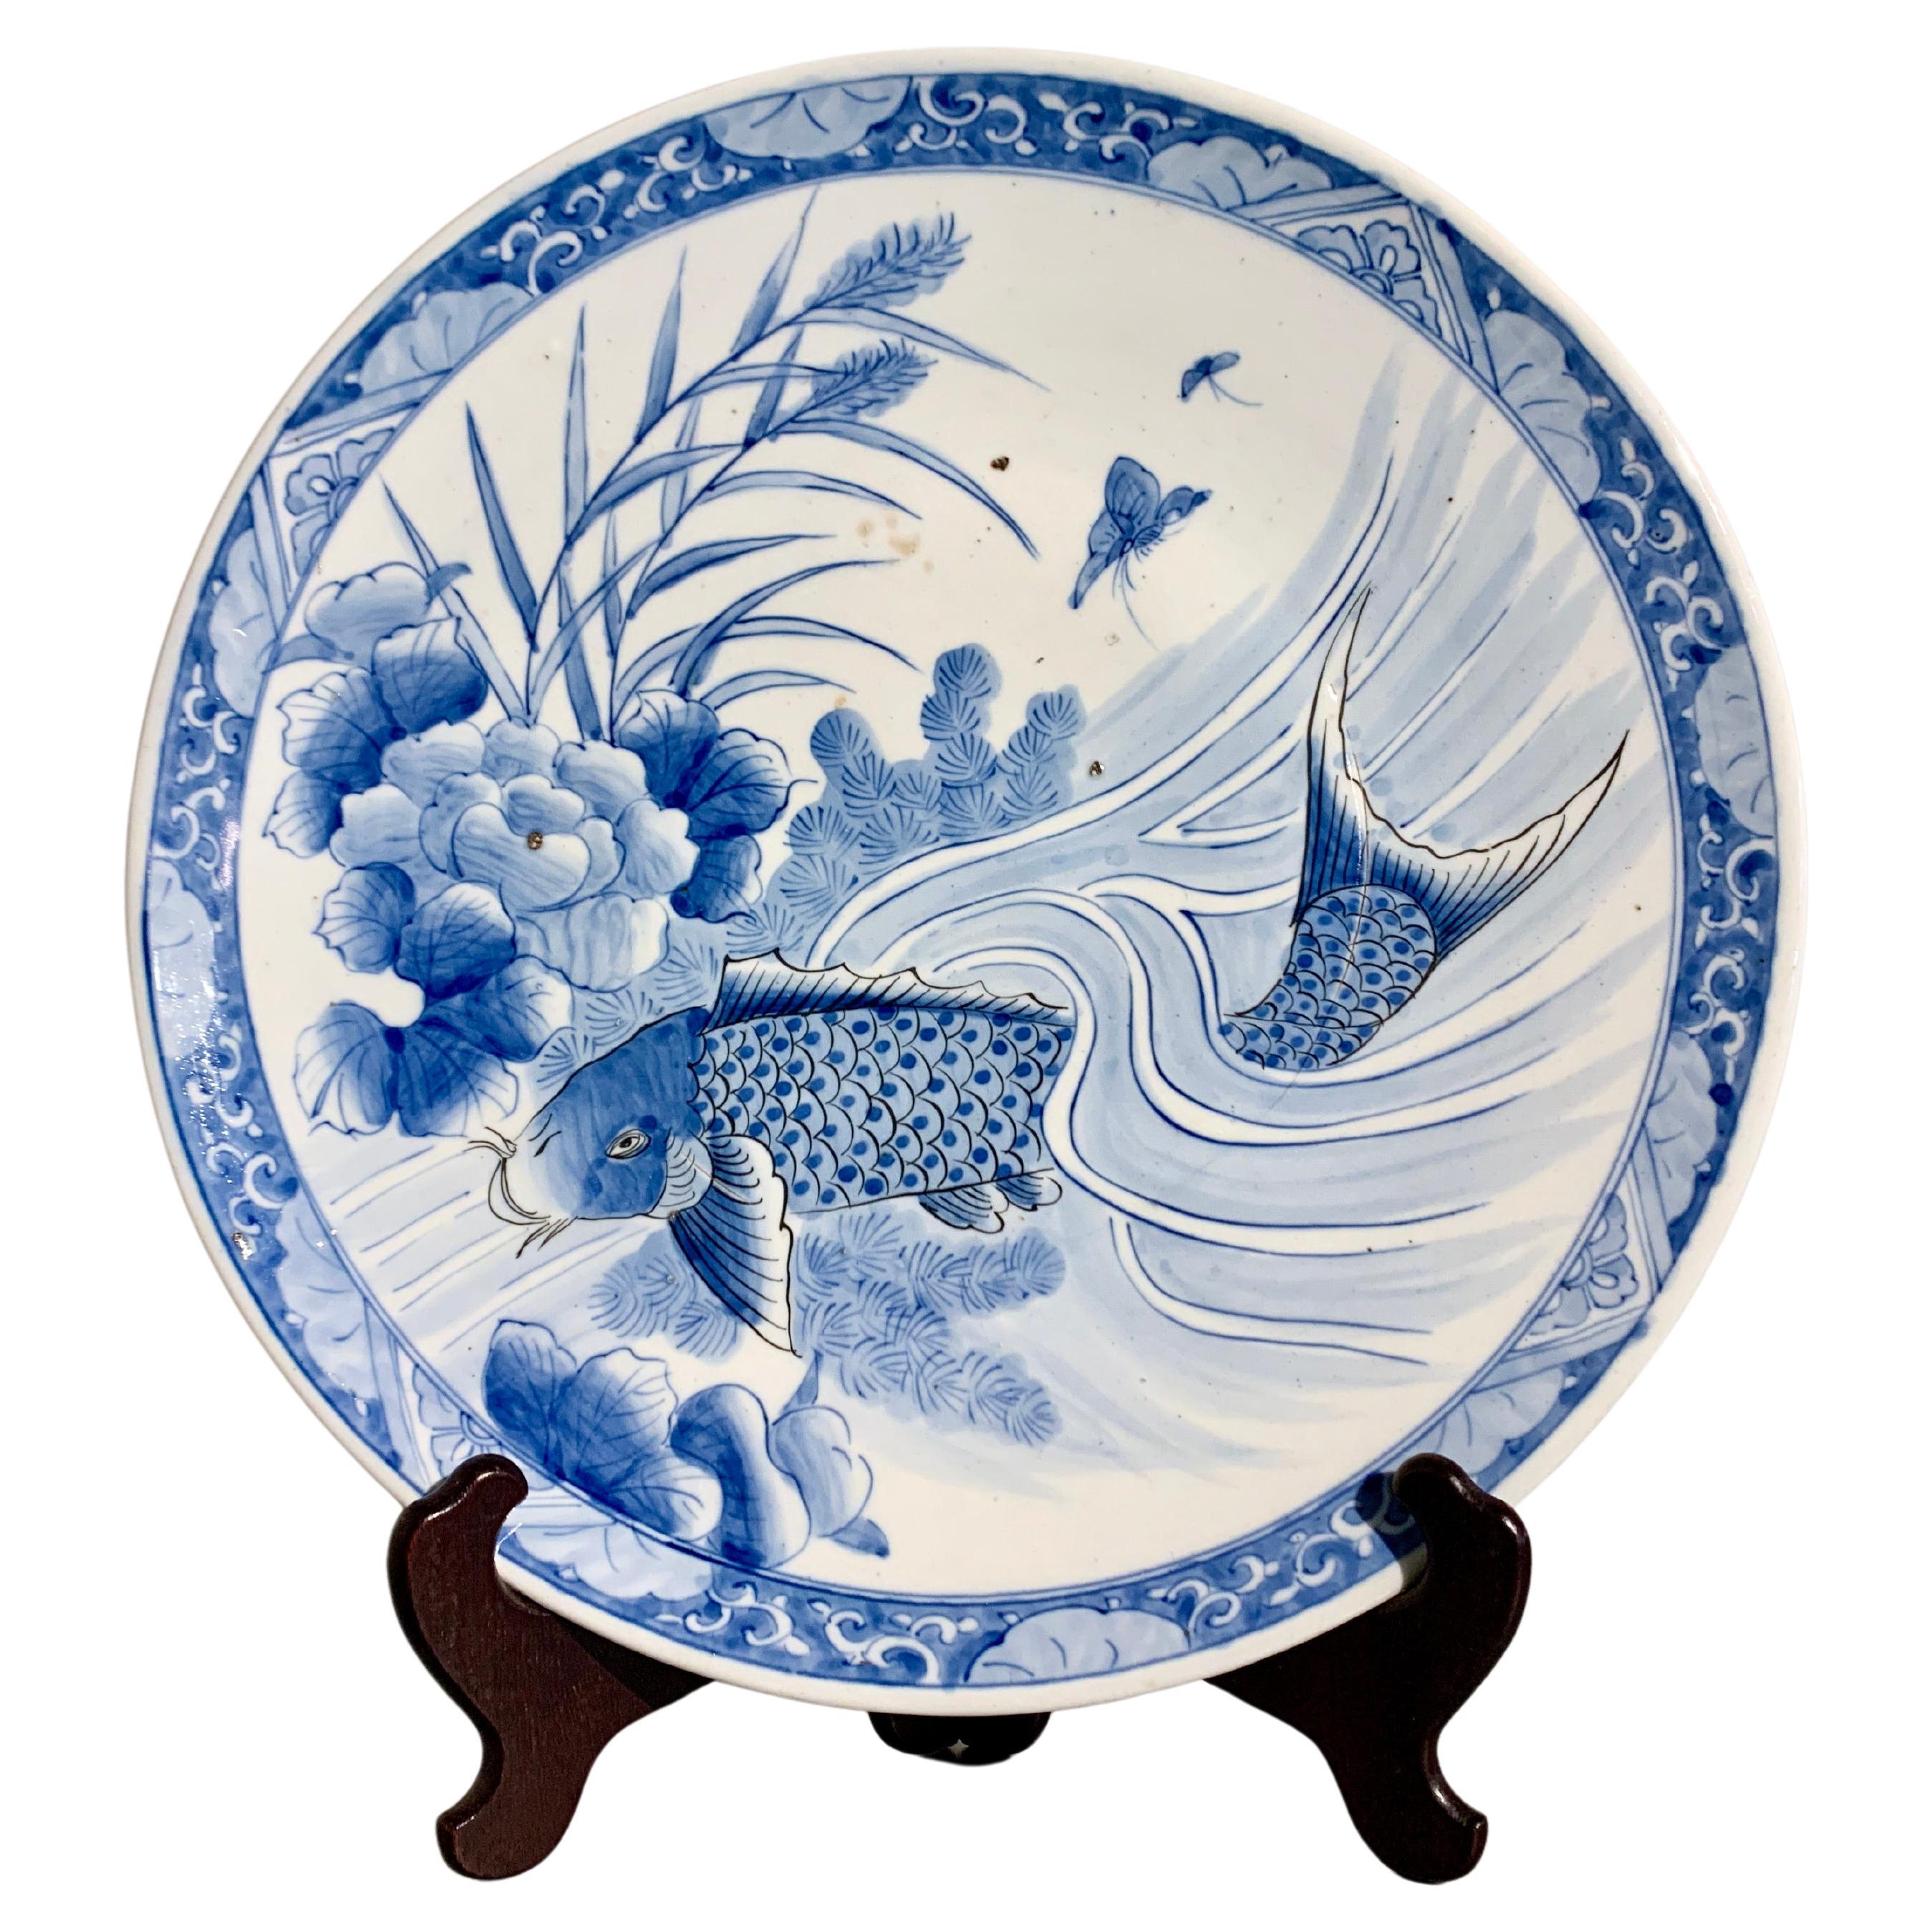 Großer japanischer blau-weißer Arita-Porzellanteller aus der japanischen Edo-Periode, 19. Jahrhundert, Japan